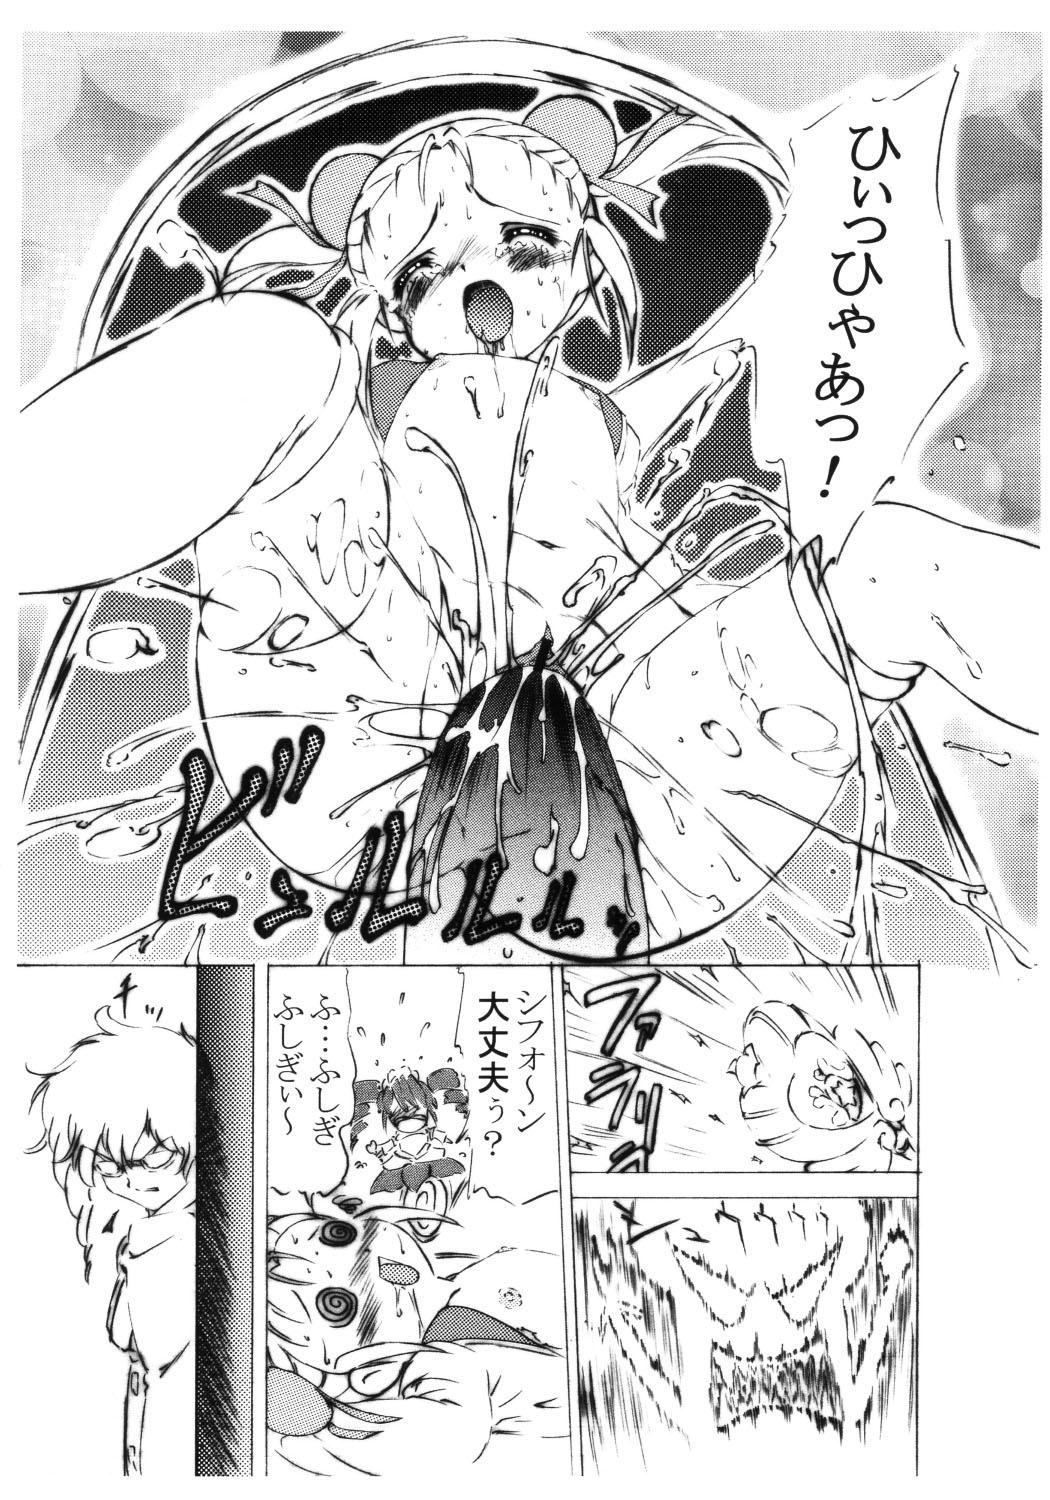 Toy Mijuku!! Hanjuku!! Lolilolimori!! 4 - Fushigiboshi no futagohime Raw - Page 10